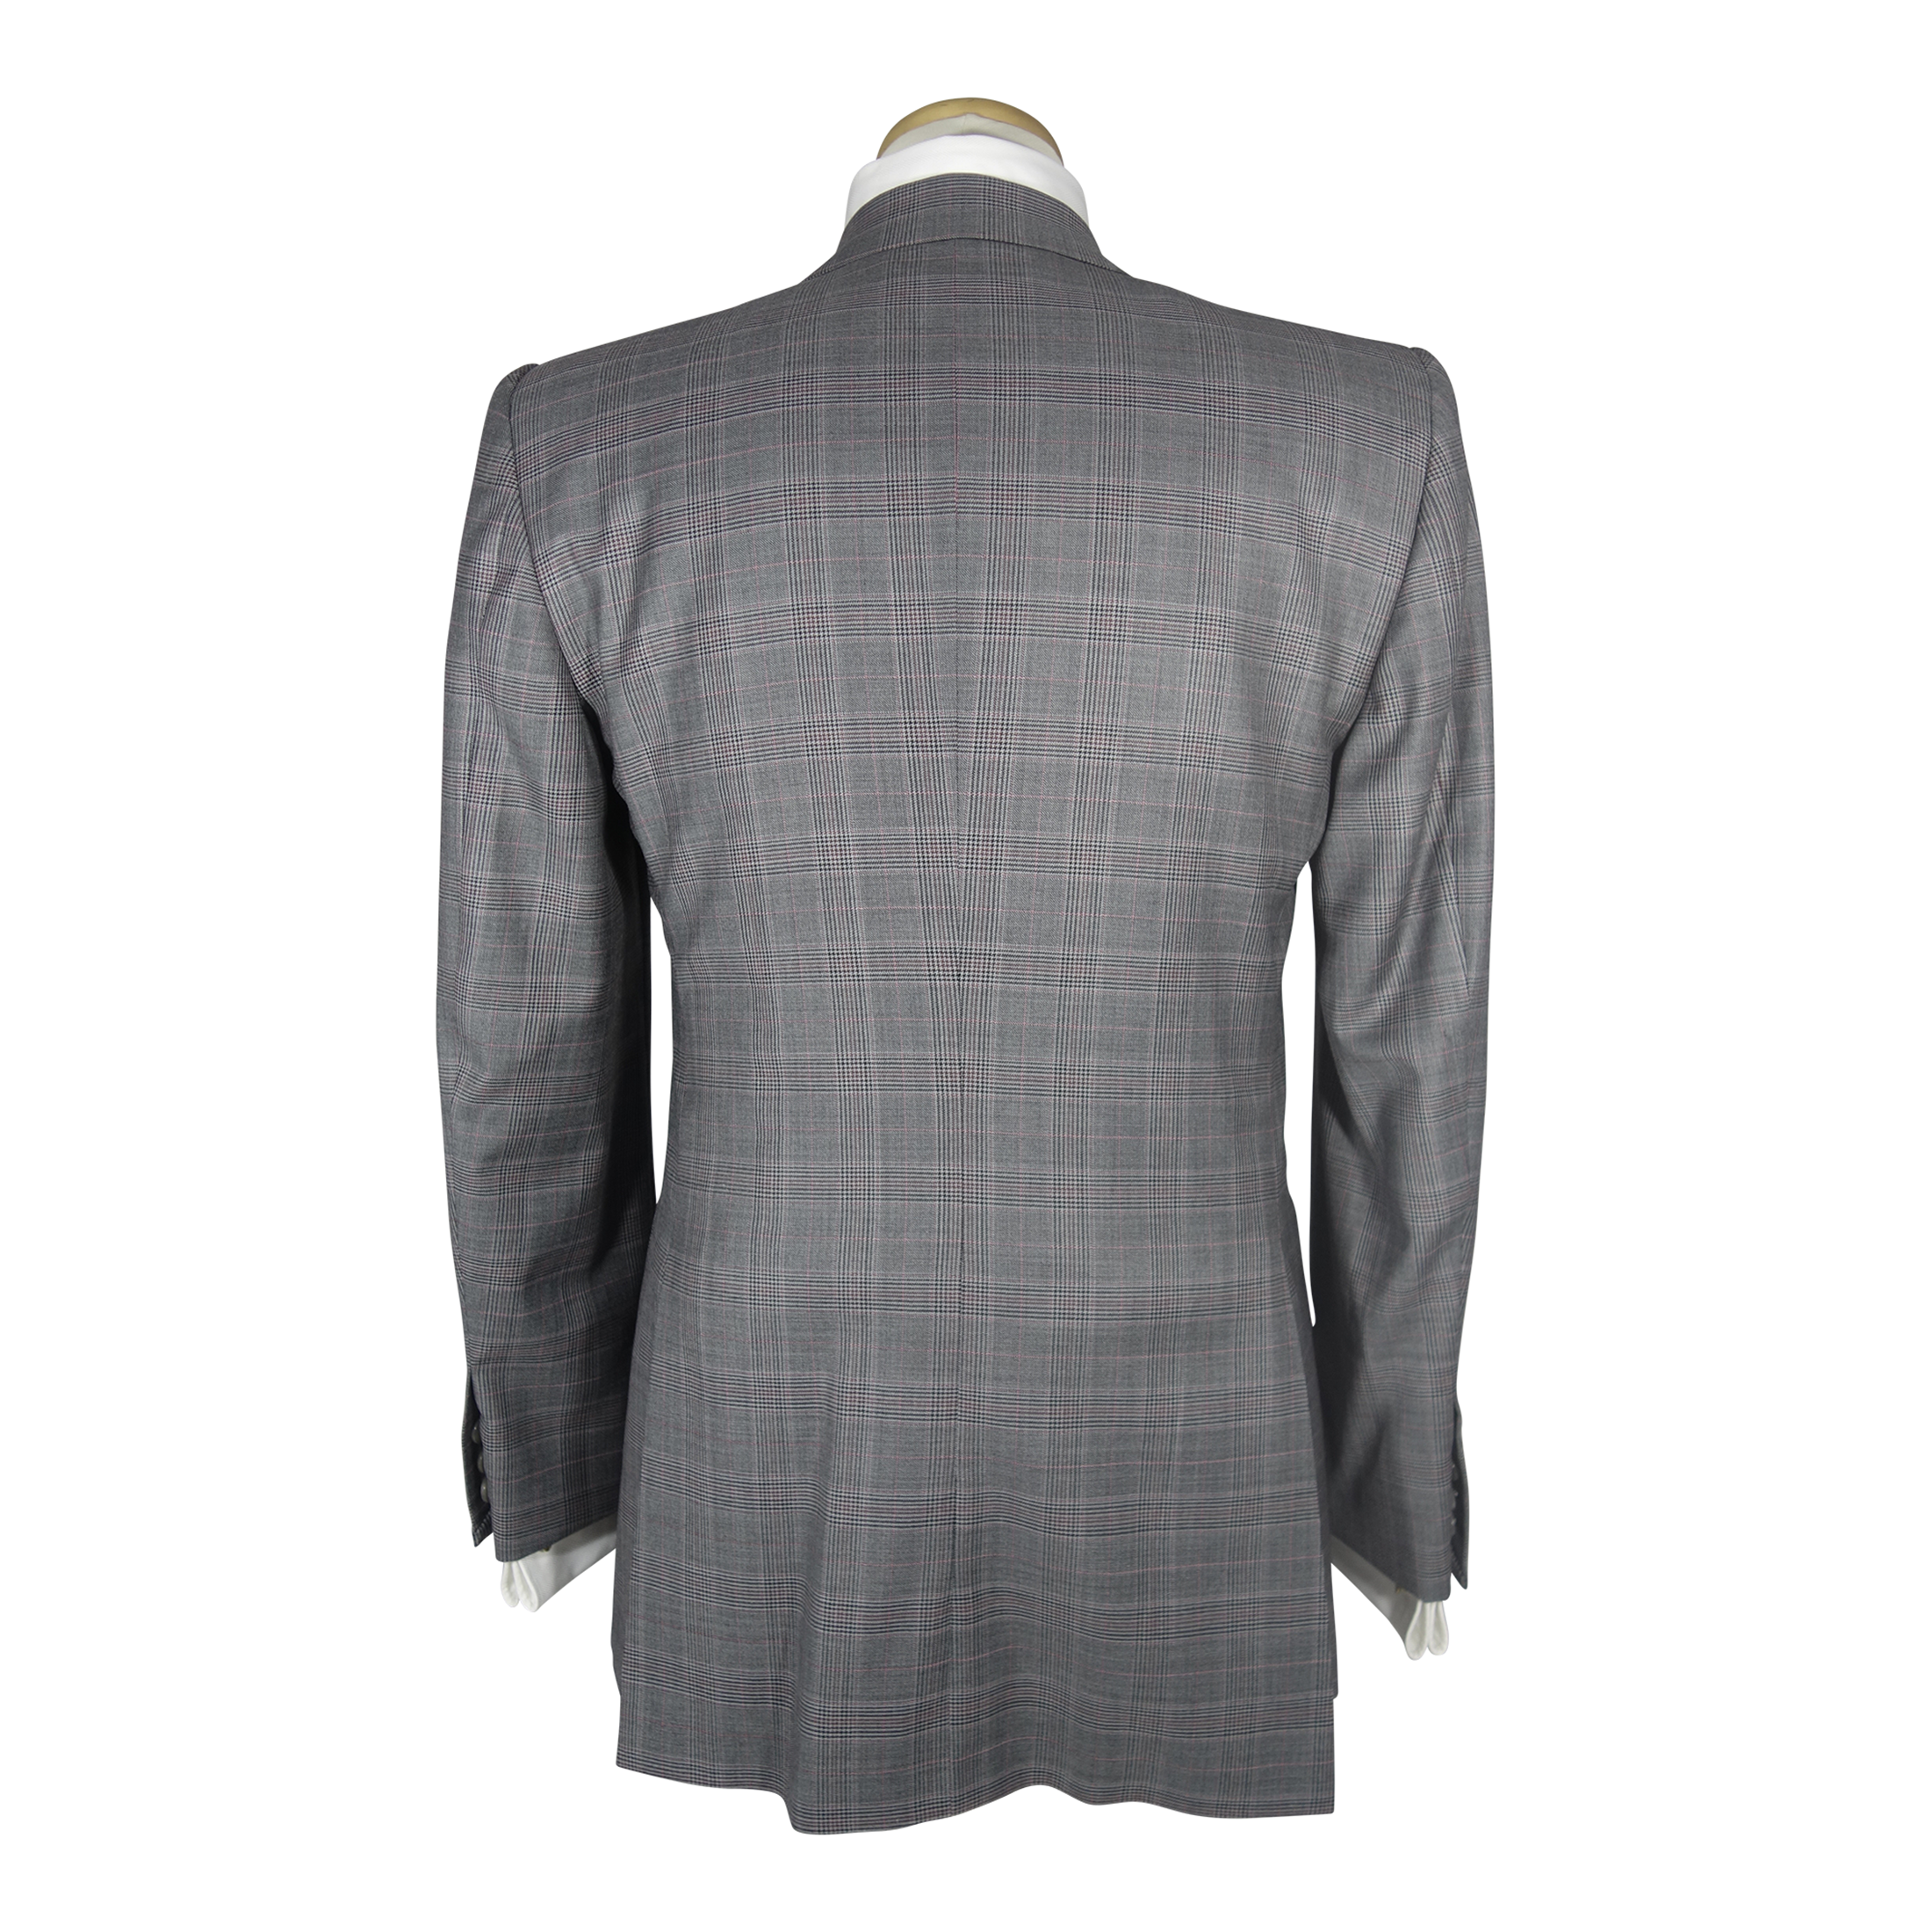 Grey Plaid Suit - 40R